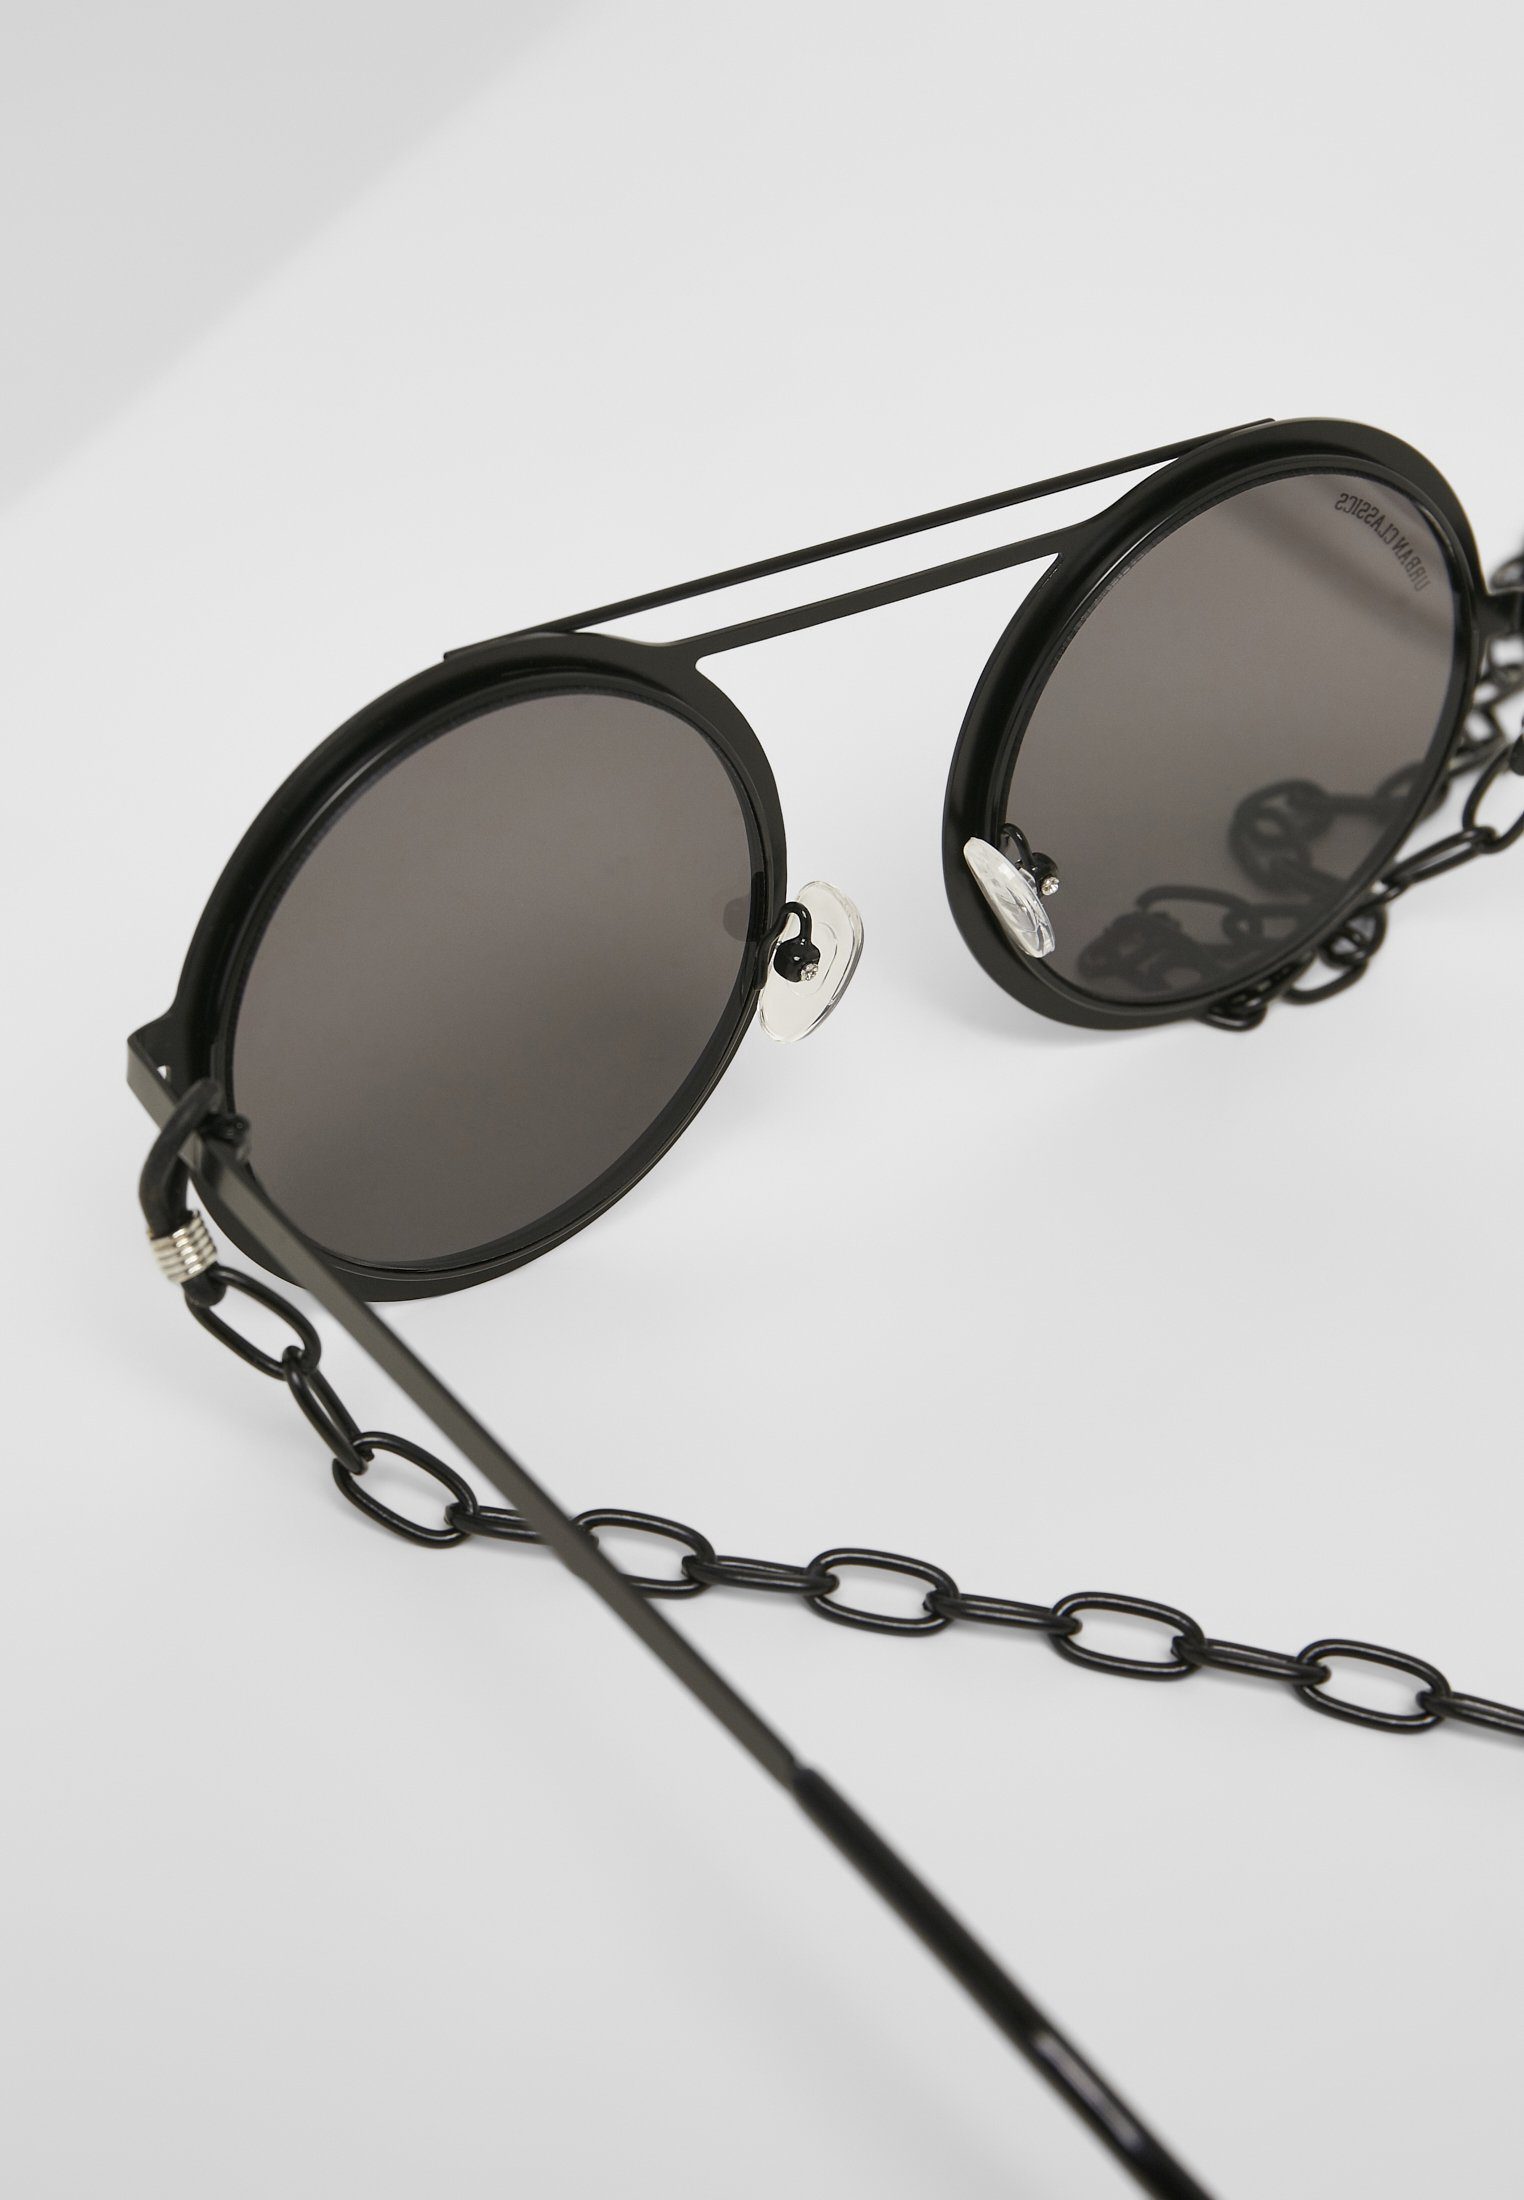 URBAN CLASSICS Sonnenbrille Unisex 104 Sunglasses silver mirror/black Chain